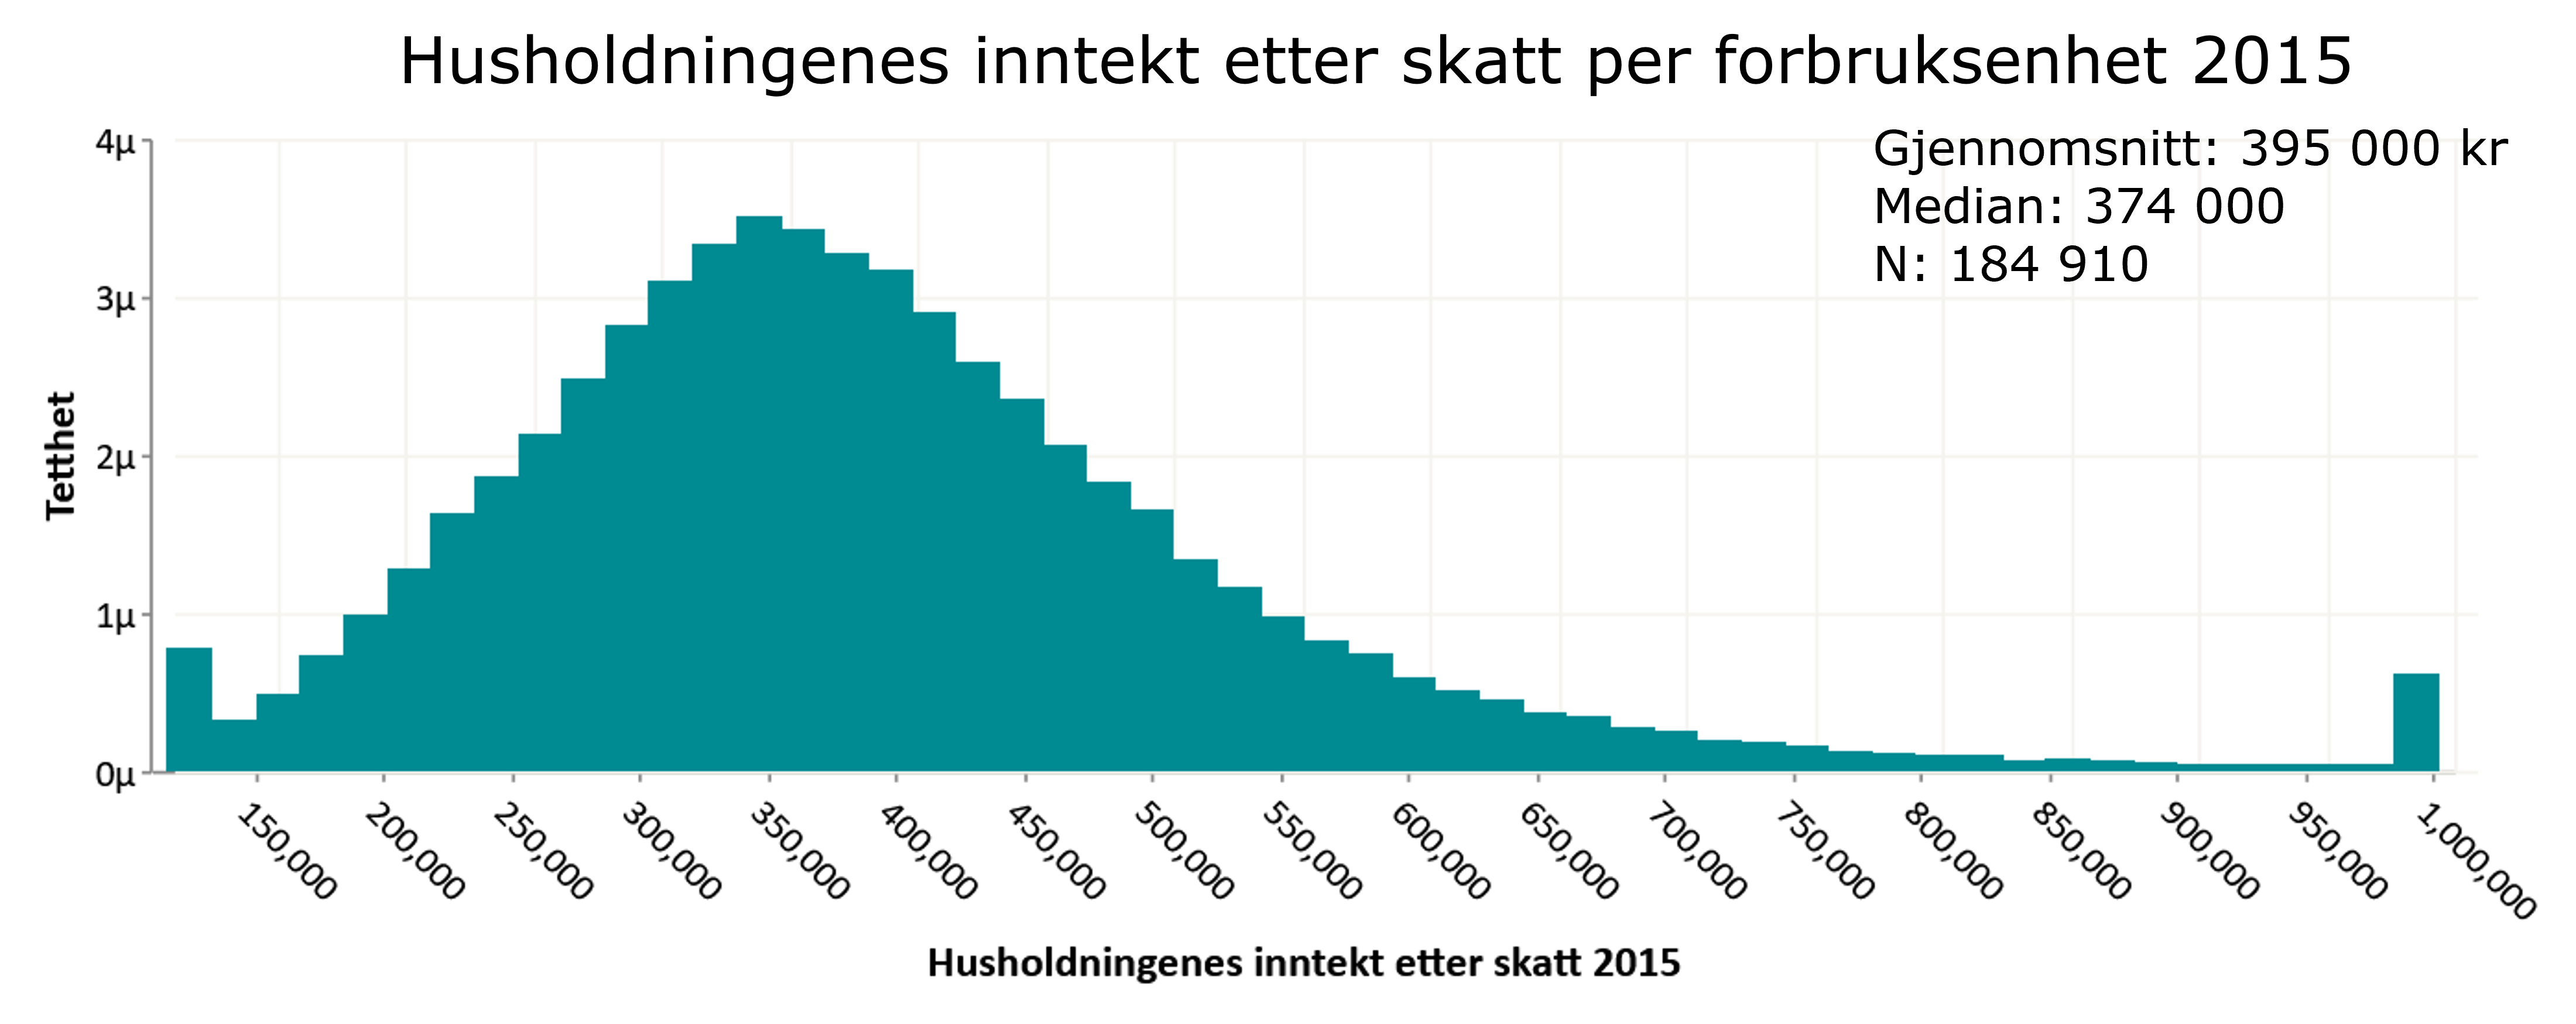 Figur 1. Husholdningenes inntekt etter skatt per forbruksenhet 2015